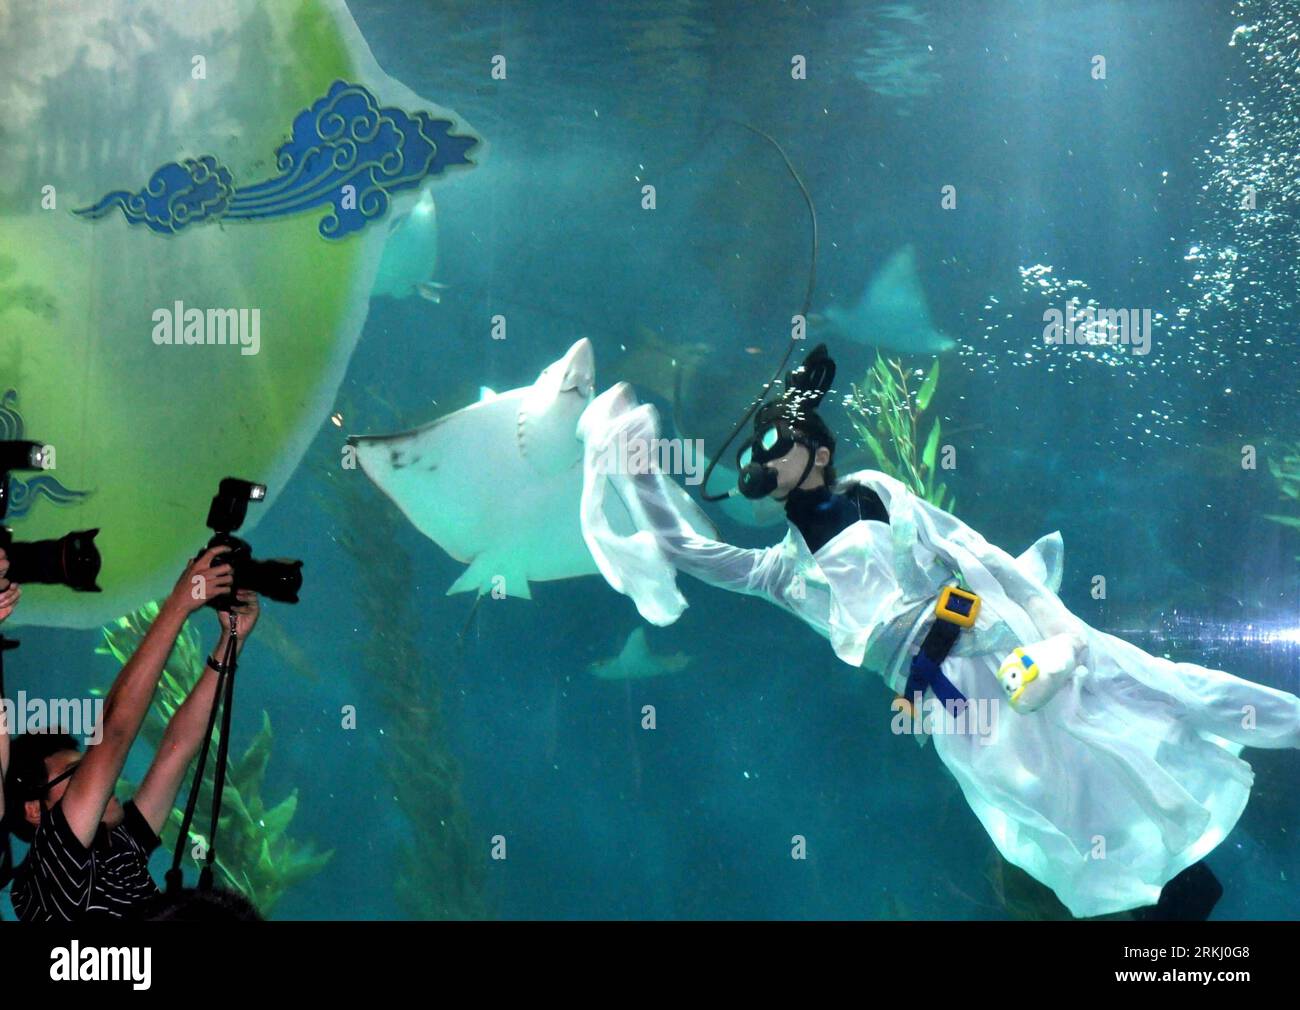 Bildnummer : 55936098 Datum : 11.09.2011 Copyright : imago/Xinhua SHANGHAI, 11 septembre 2011 (Xinhua) -- Un plongeur habillé en Chang e, la daieté chinoise de la lune, se produit pour les visiteurs dans un aquarium océanique de Shanghai à Shanghai, dans l'est de la Chine, le 11 septembre 2011, pour célébrer le jour de mi-automne qui tombe le 12 septembre. (Xinhua/Liu Ying) (zhs) CHINE-SHANGHAI-FÊTES DE LA MI-AUTOMNE (CN) PUBLICATIONxNOTxINxCHN Gesellschaft x2x xtm 2011 quer o0 Taucher Mondgöttin Kostüm o00 Mondfest 55936098 Date 11 09 2011 Copyright Imago XINHUA Shanghai sept 11 2011 XINHUA un plongeur habillé en Chang e Chinois Banque D'Images